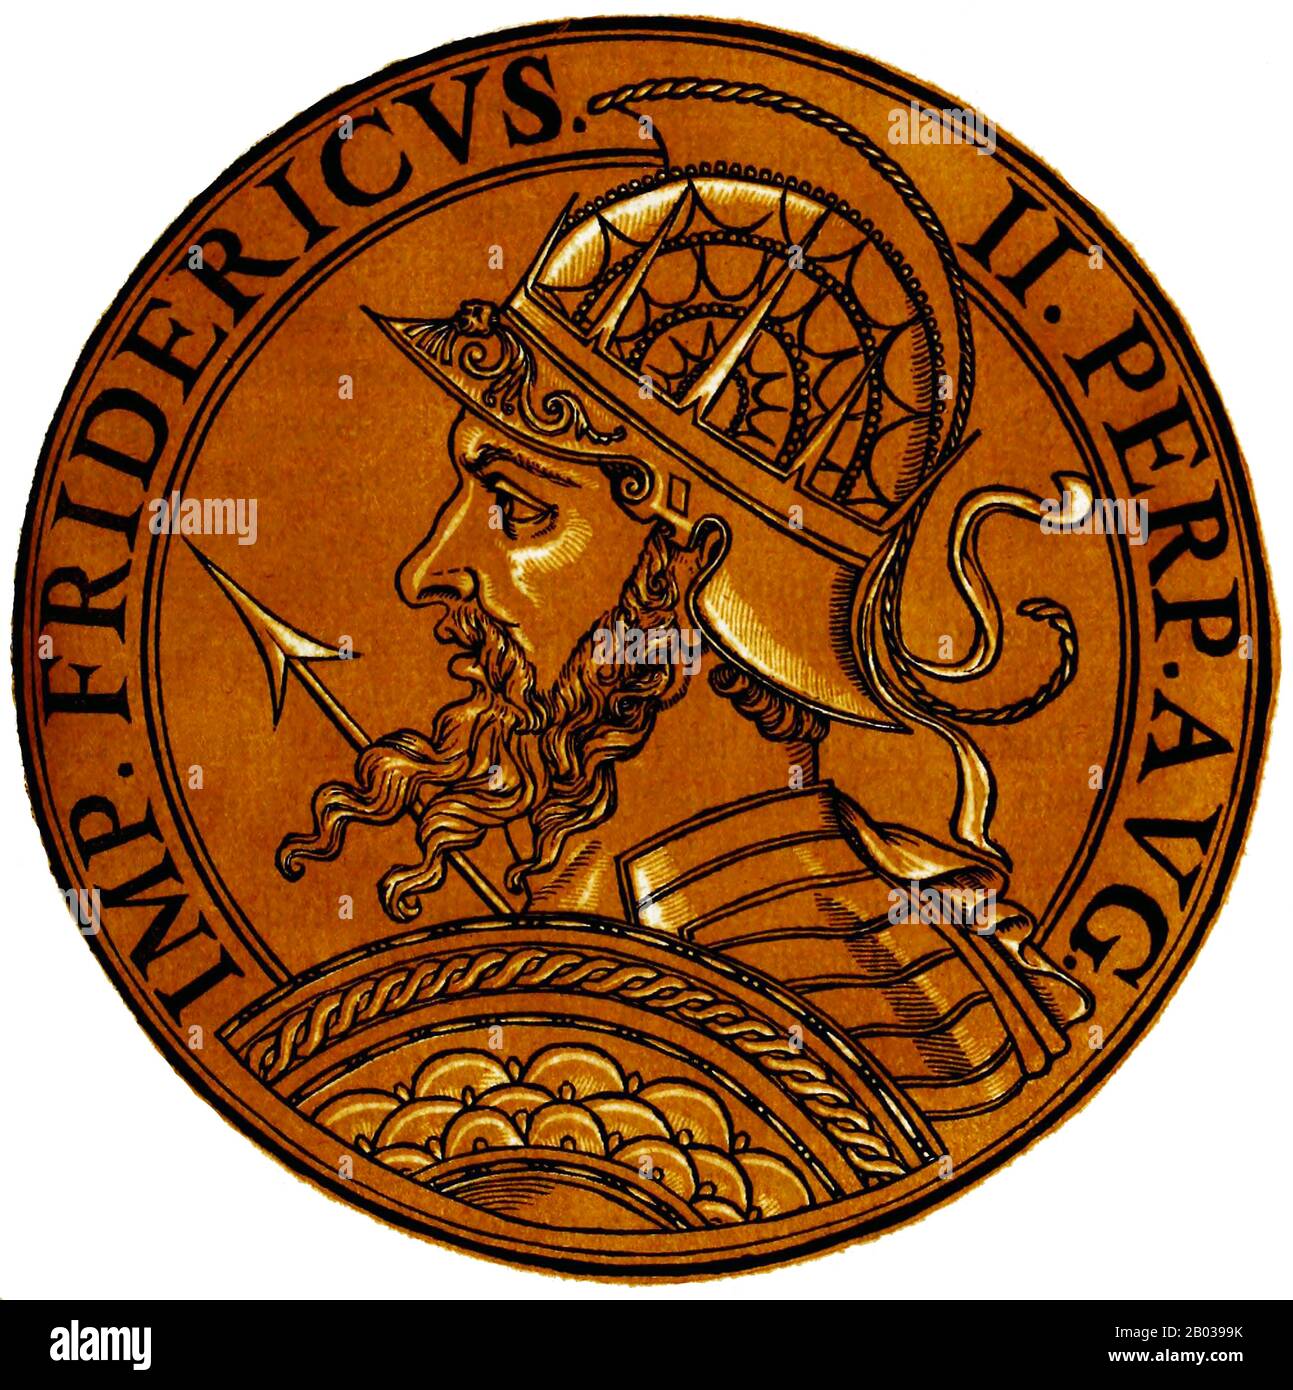 Frederick II (1194-1250) était le fils de l'empereur Henry VI, et n'était qu'un bébé lorsqu'il était couronné roi de Sicile par sa mère en 1198. Quand sa mère est décédée la même année, il a été donné au Pape Innocent III, qui est devenu son tuteur. Quand Frederick est arrivé en 1208, il a affirmé son pouvoir sur la Sicile. L'empereur Otto IV envahit l'Italie en 1209, espérant conquérir la Sicile et amener Frederick au talon, mais en 1211, Frederick a été élu par contumace comme roi d'Allemagne par divers princes impériaux nourris avec le règne d'Otto. Frederick est entré en Allemagne avec une petite armée et a été officiellement couronné roi d'Allemagne en Banque D'Images